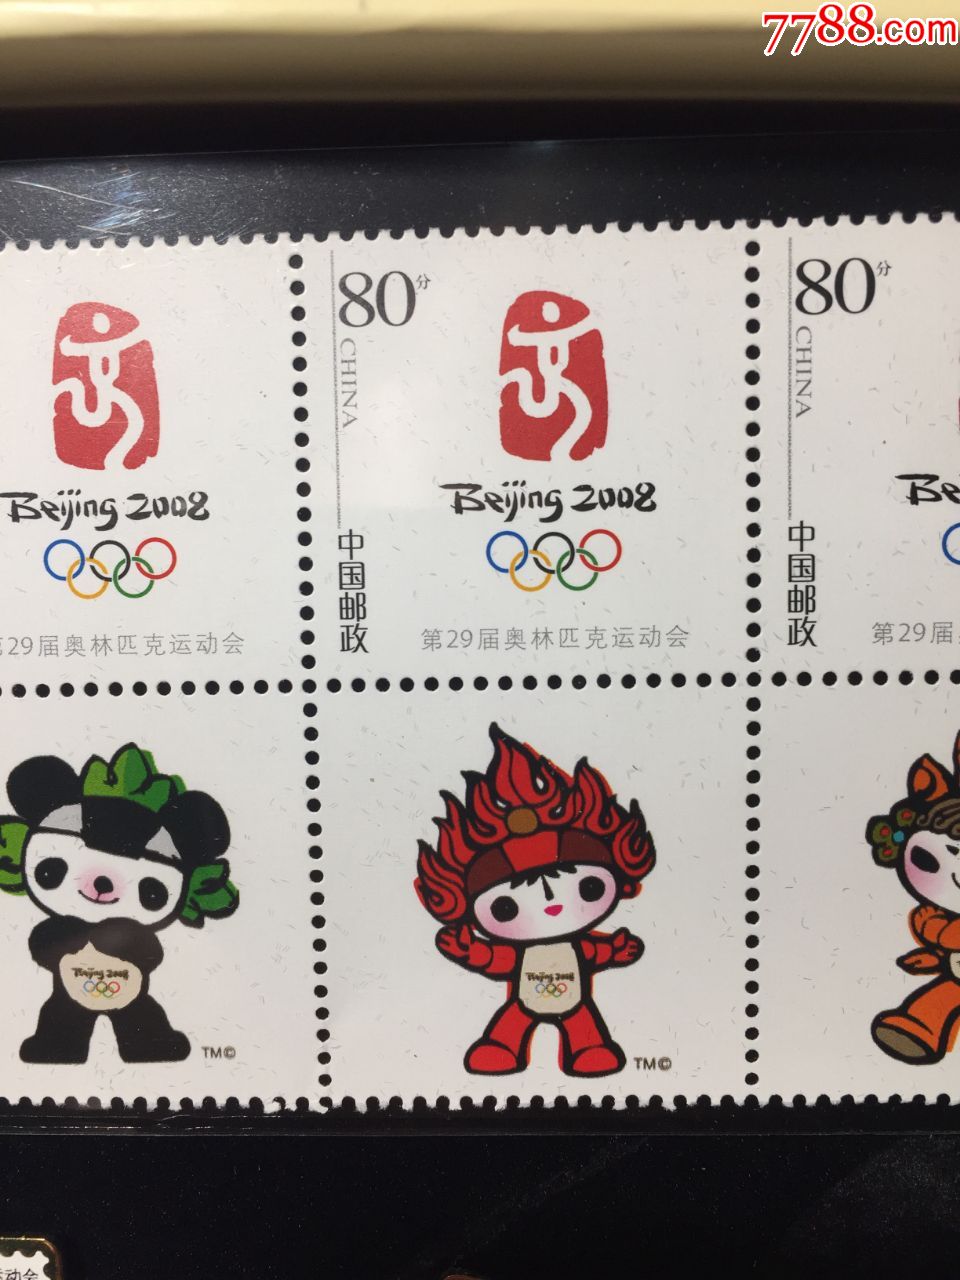 2008年北京奥运会福聚五环组合徽章第29届奥运会吉祥物邮票仿印徽章